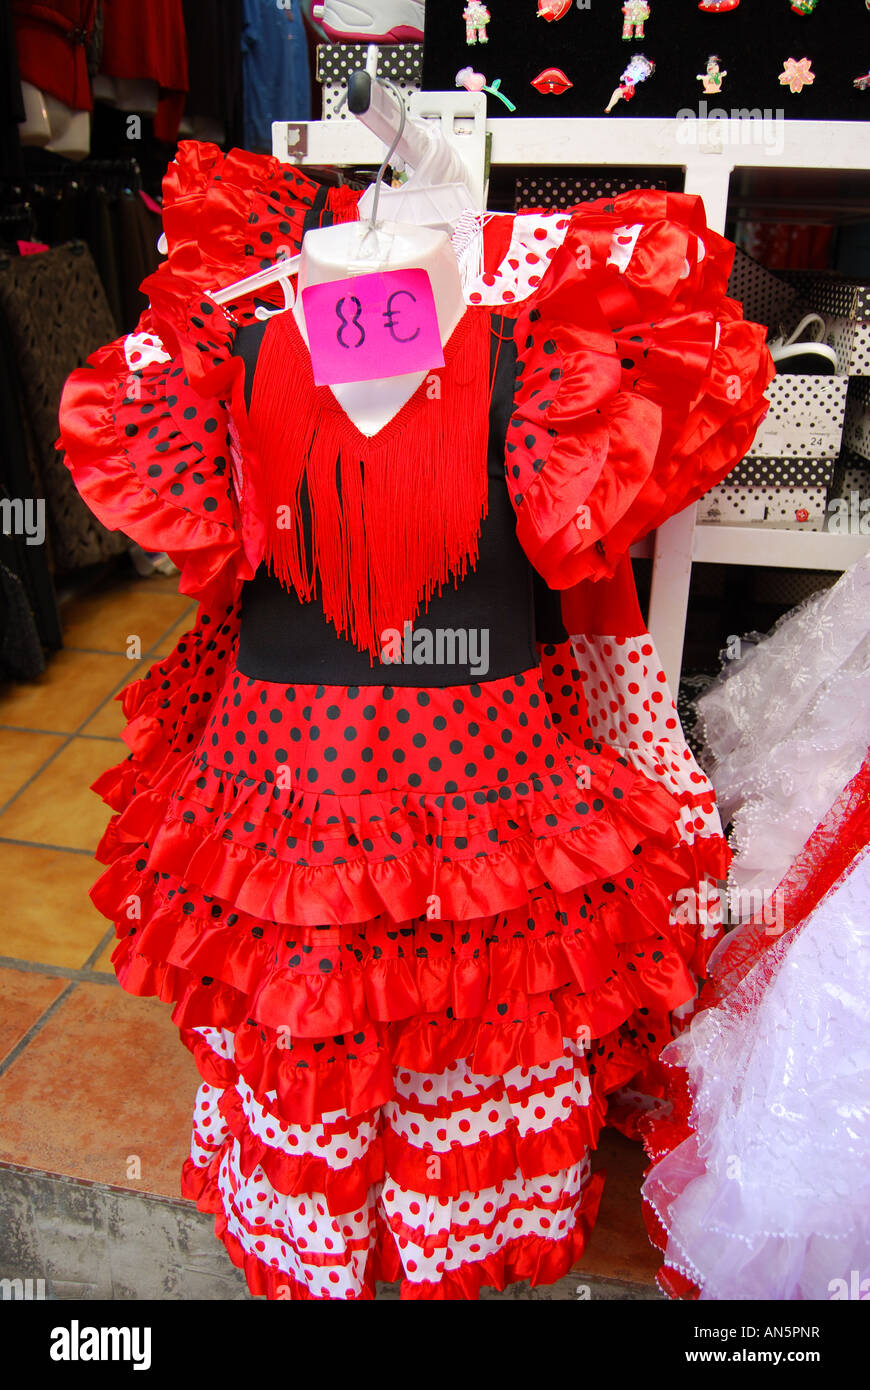 flamenco dress,